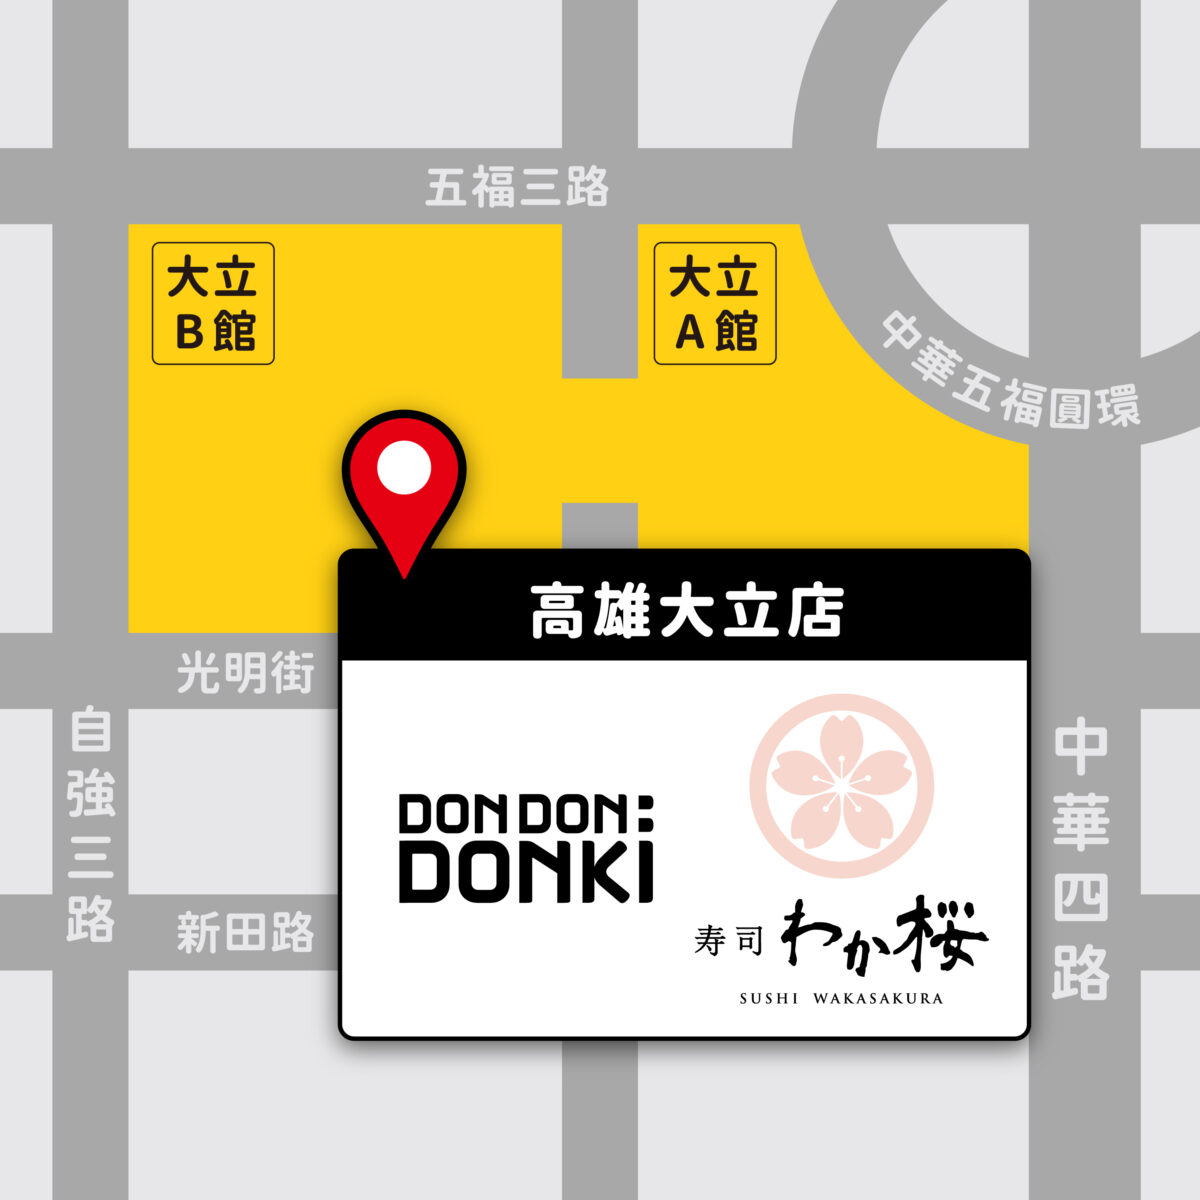 「DON DON DONKI 進軍南台灣！」 全台最大間！12月7日盛大開幕DON DON DONKI 高雄大立店地圖